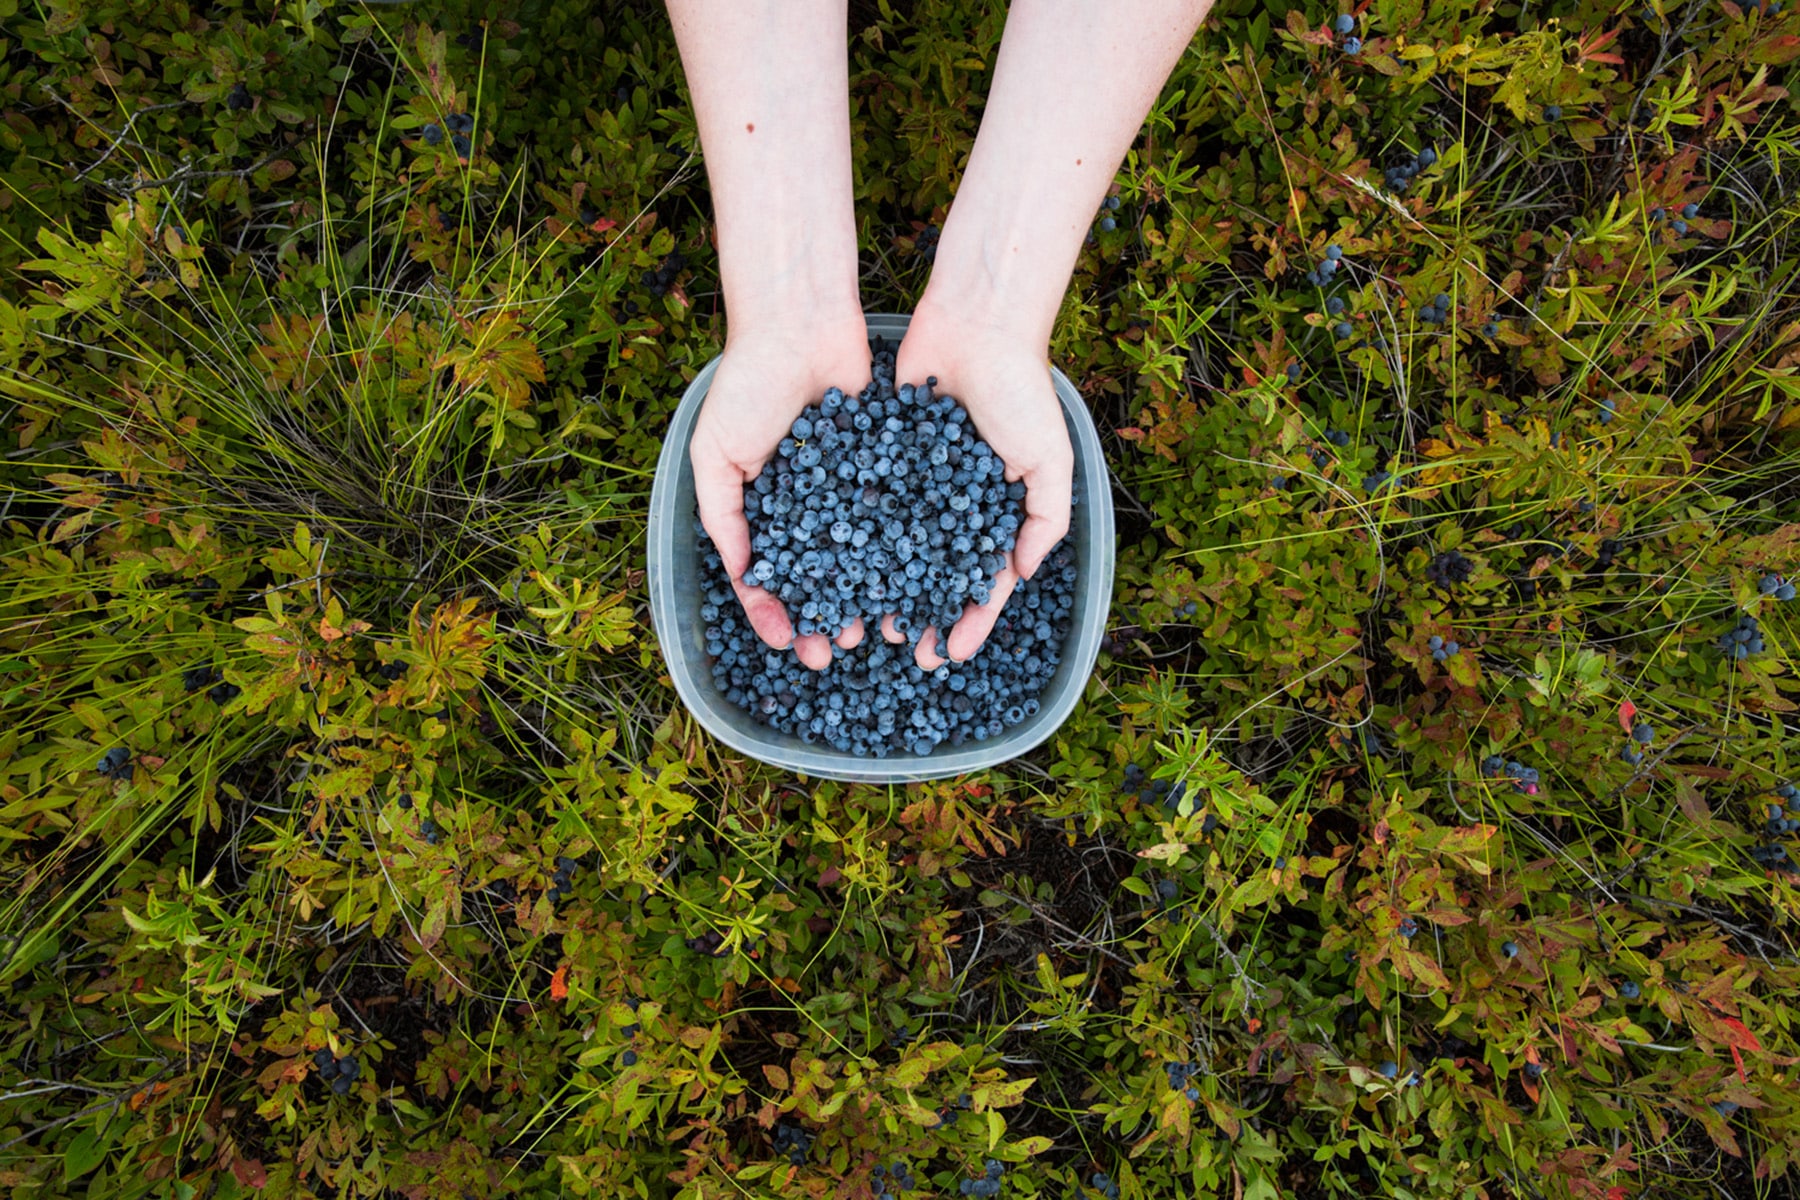 Picking wild blueberries. Kennebunk, Maine.